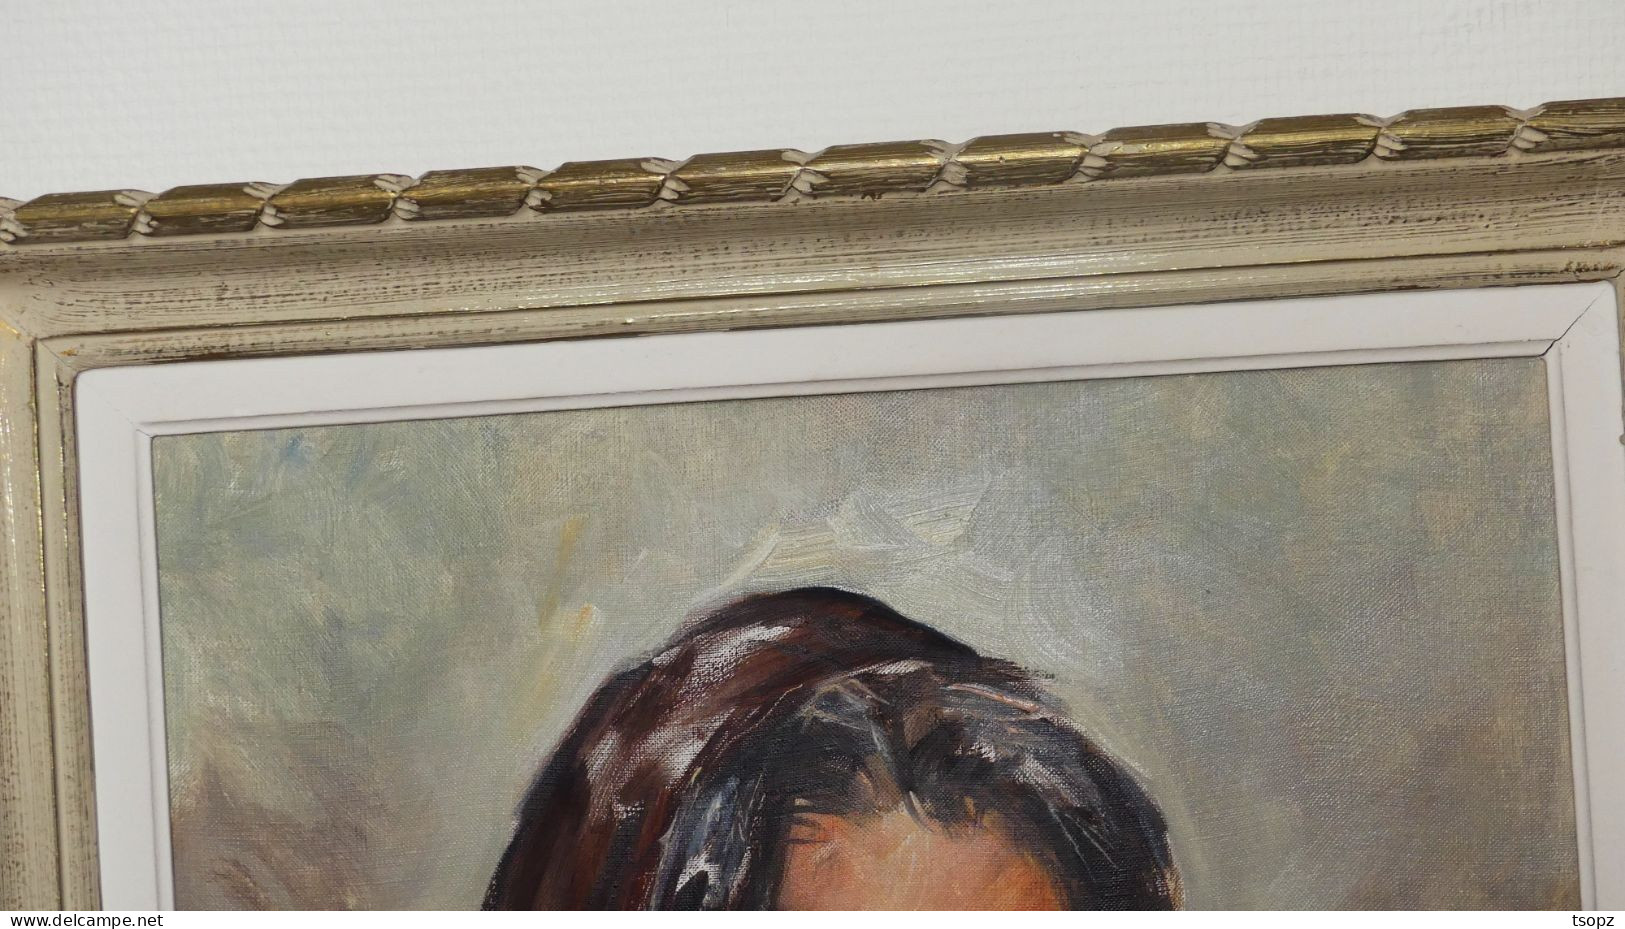 Très belle peinture a huile "femme corse au foulard "de Tony Cardella (1898-1976